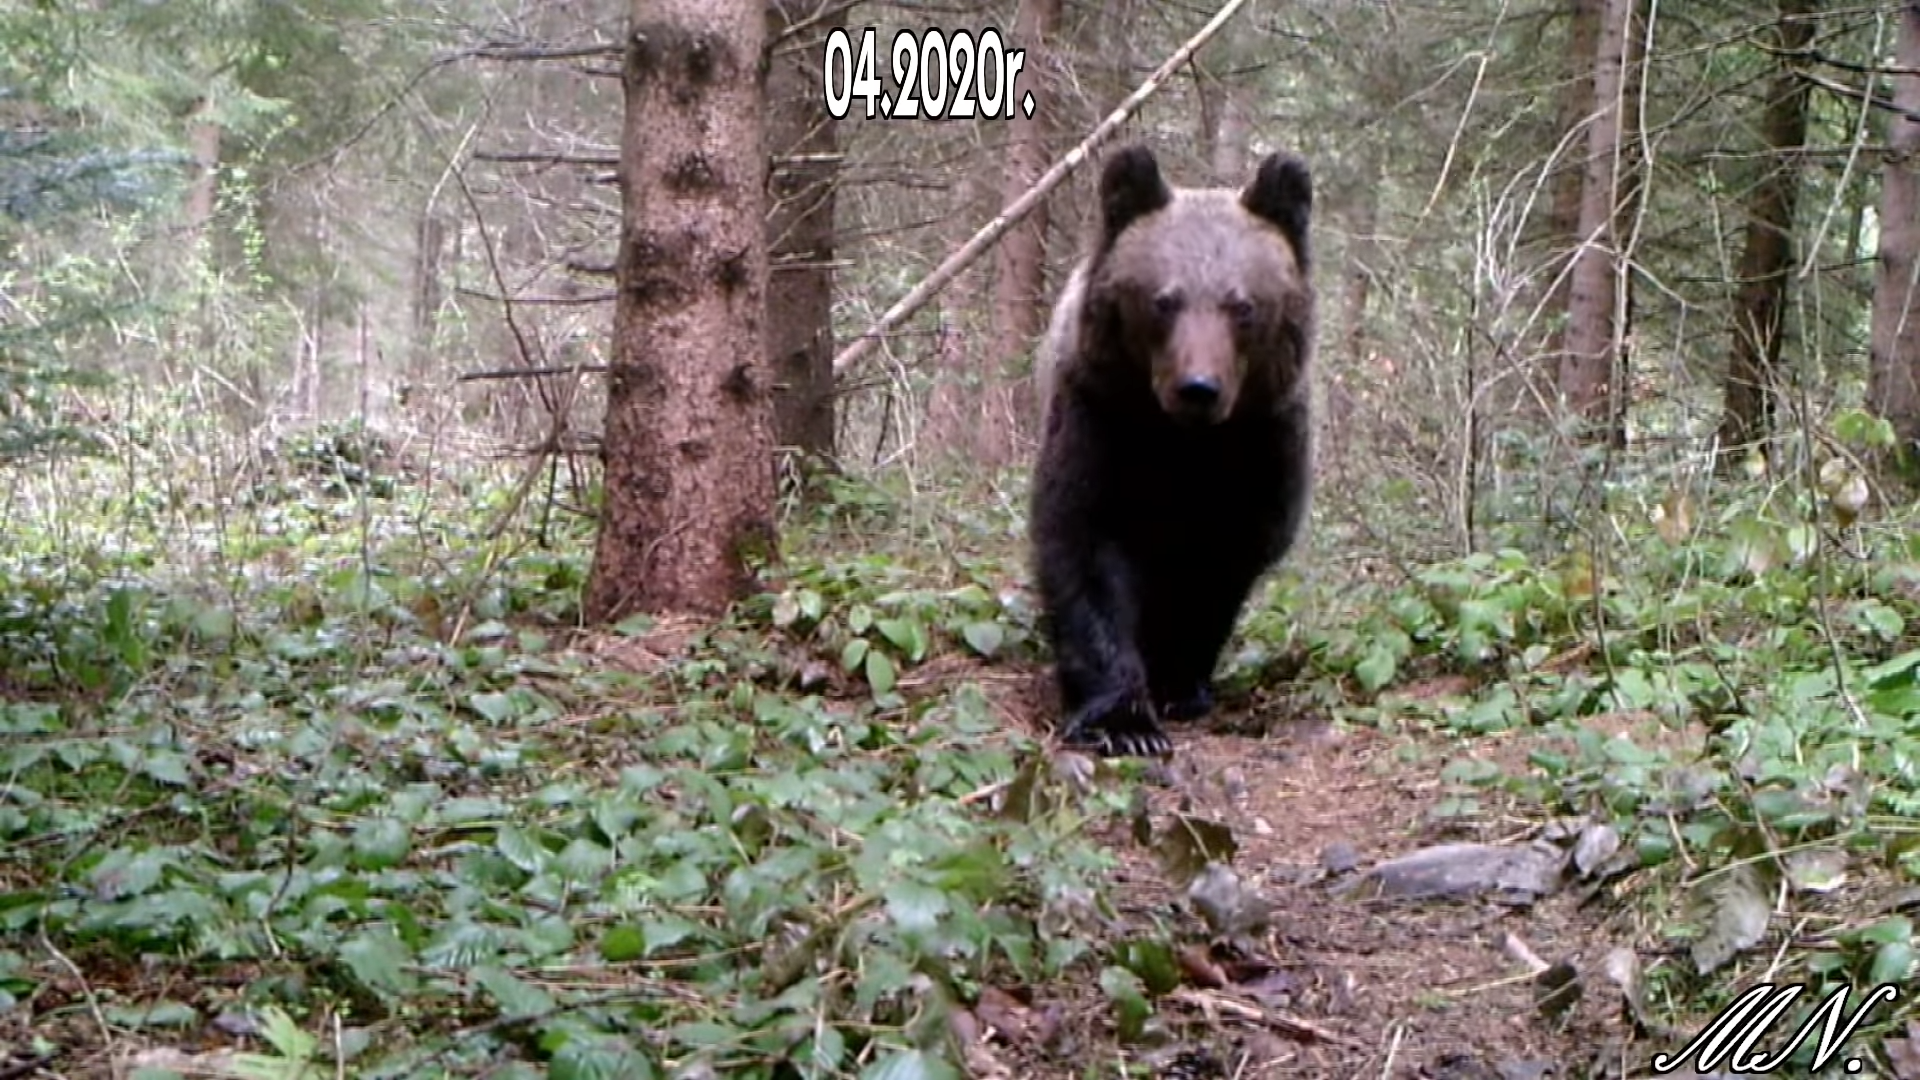 BIESZCZADY. Niedźwiedź, borsuk i wilk nagrane przez bieszczadnika [VIDEO] - Zdjęcie główne